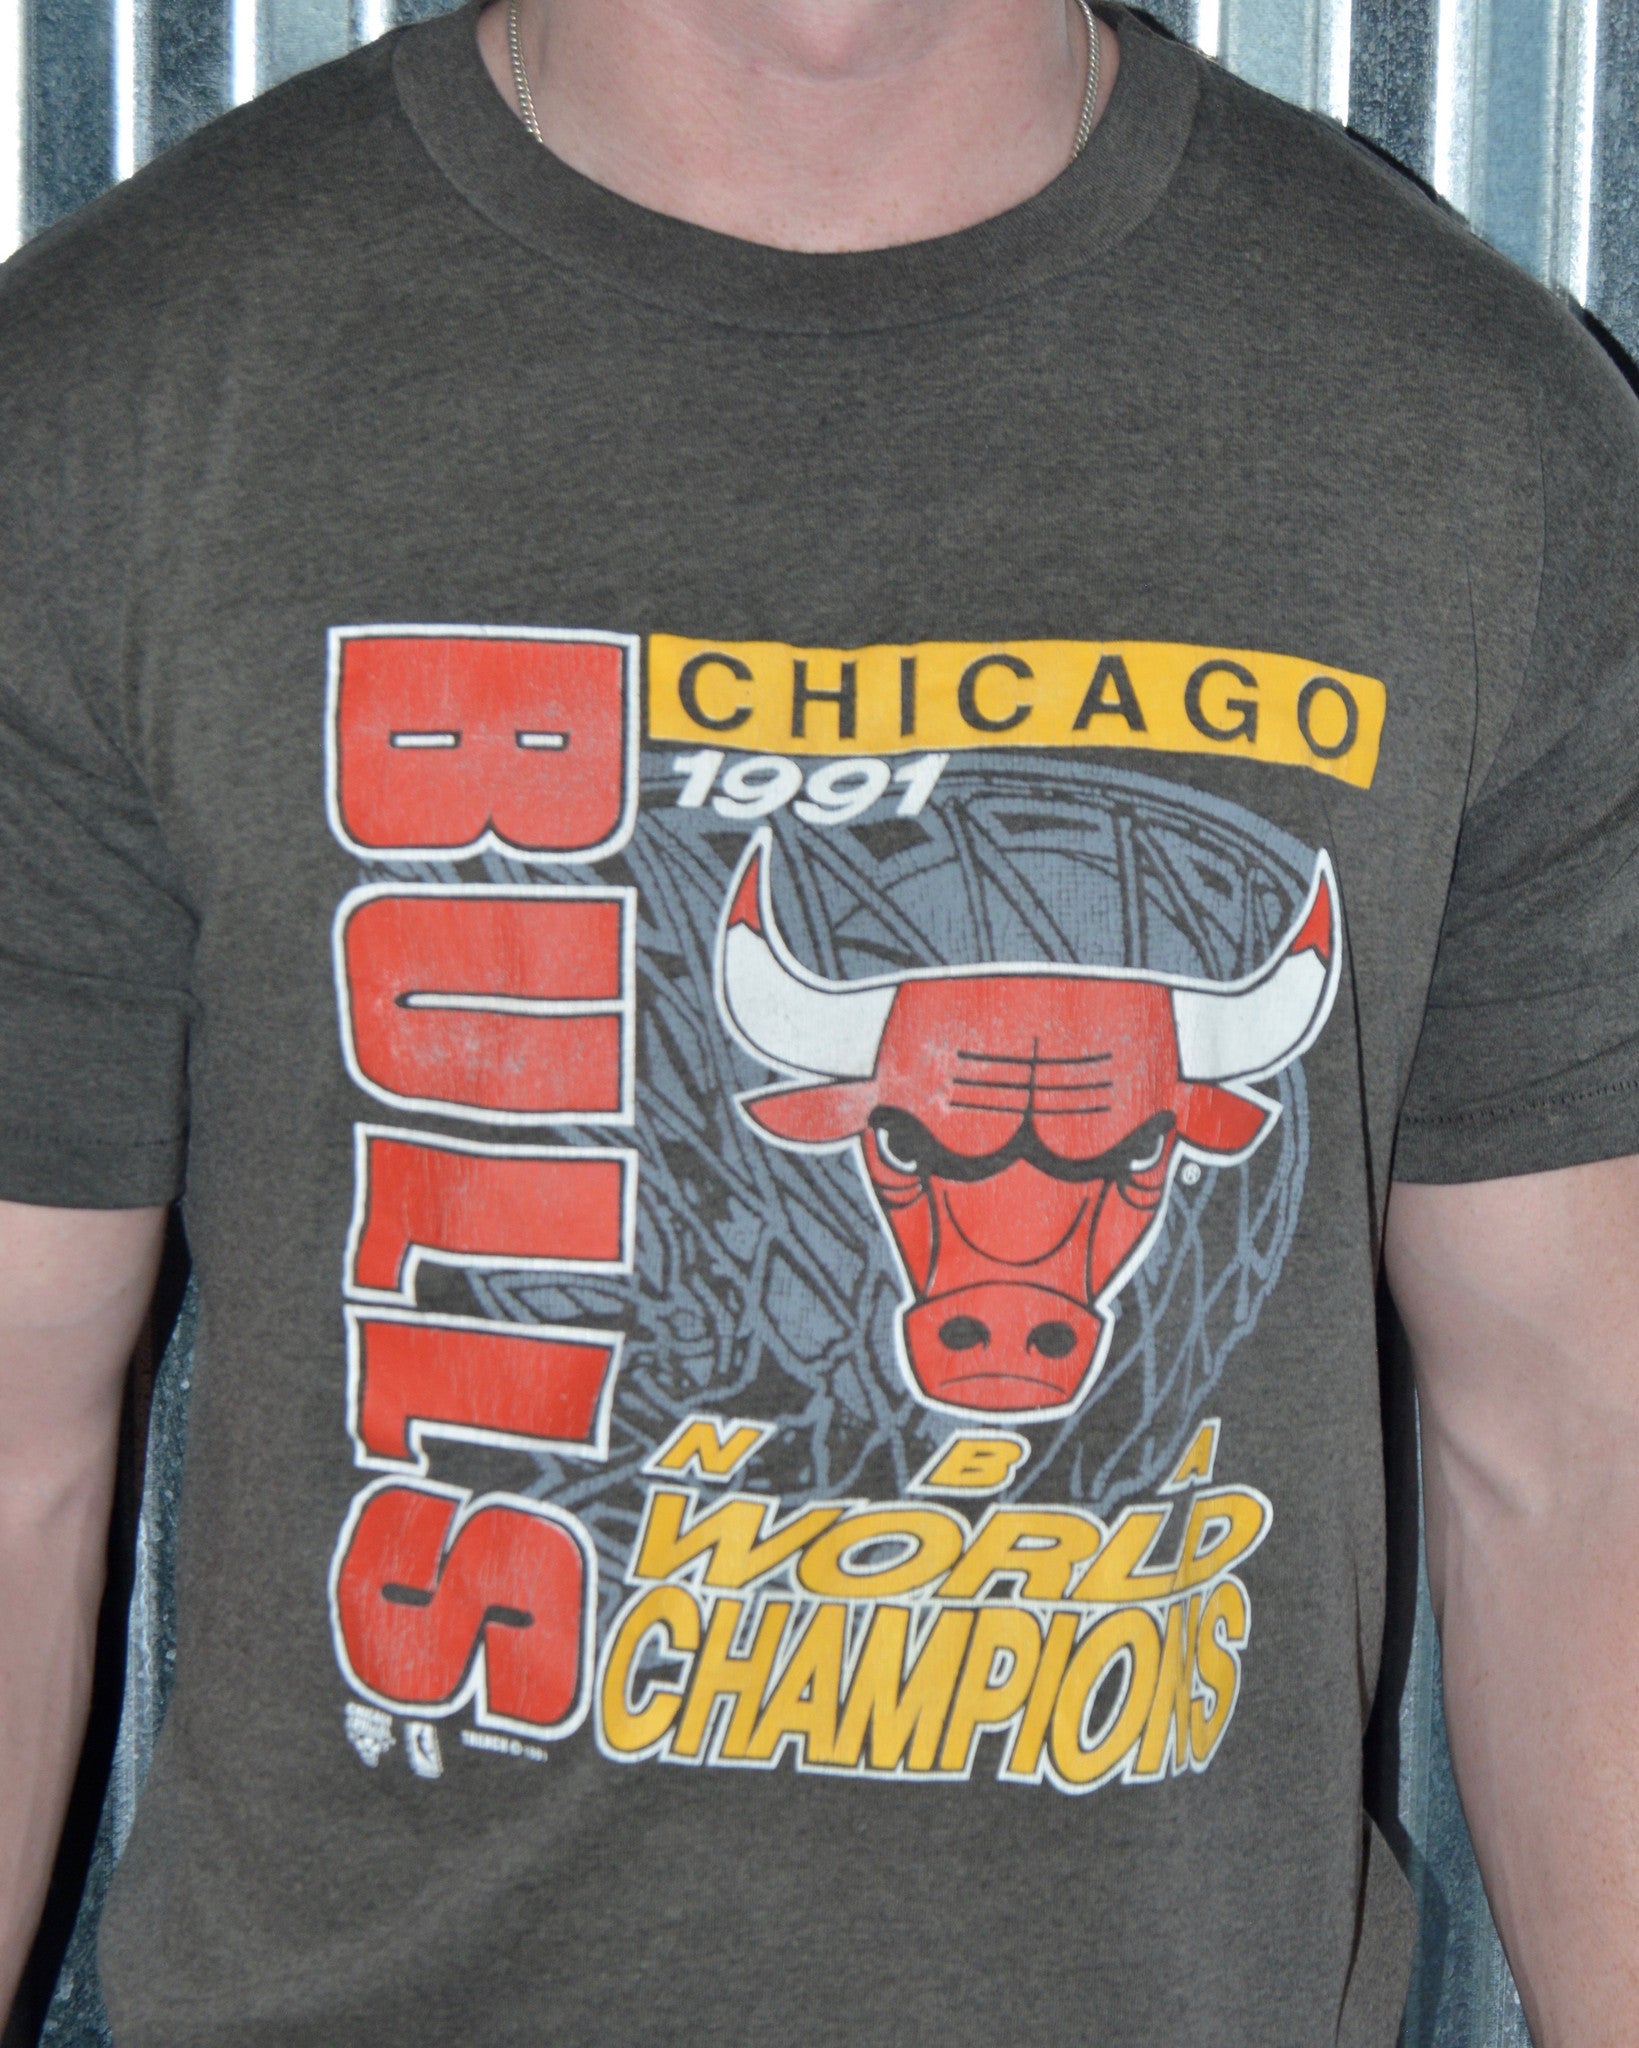 Vintage Bulls shirt in 2023  Vintage shirt design, Bulls shirt, Vintage  shirts